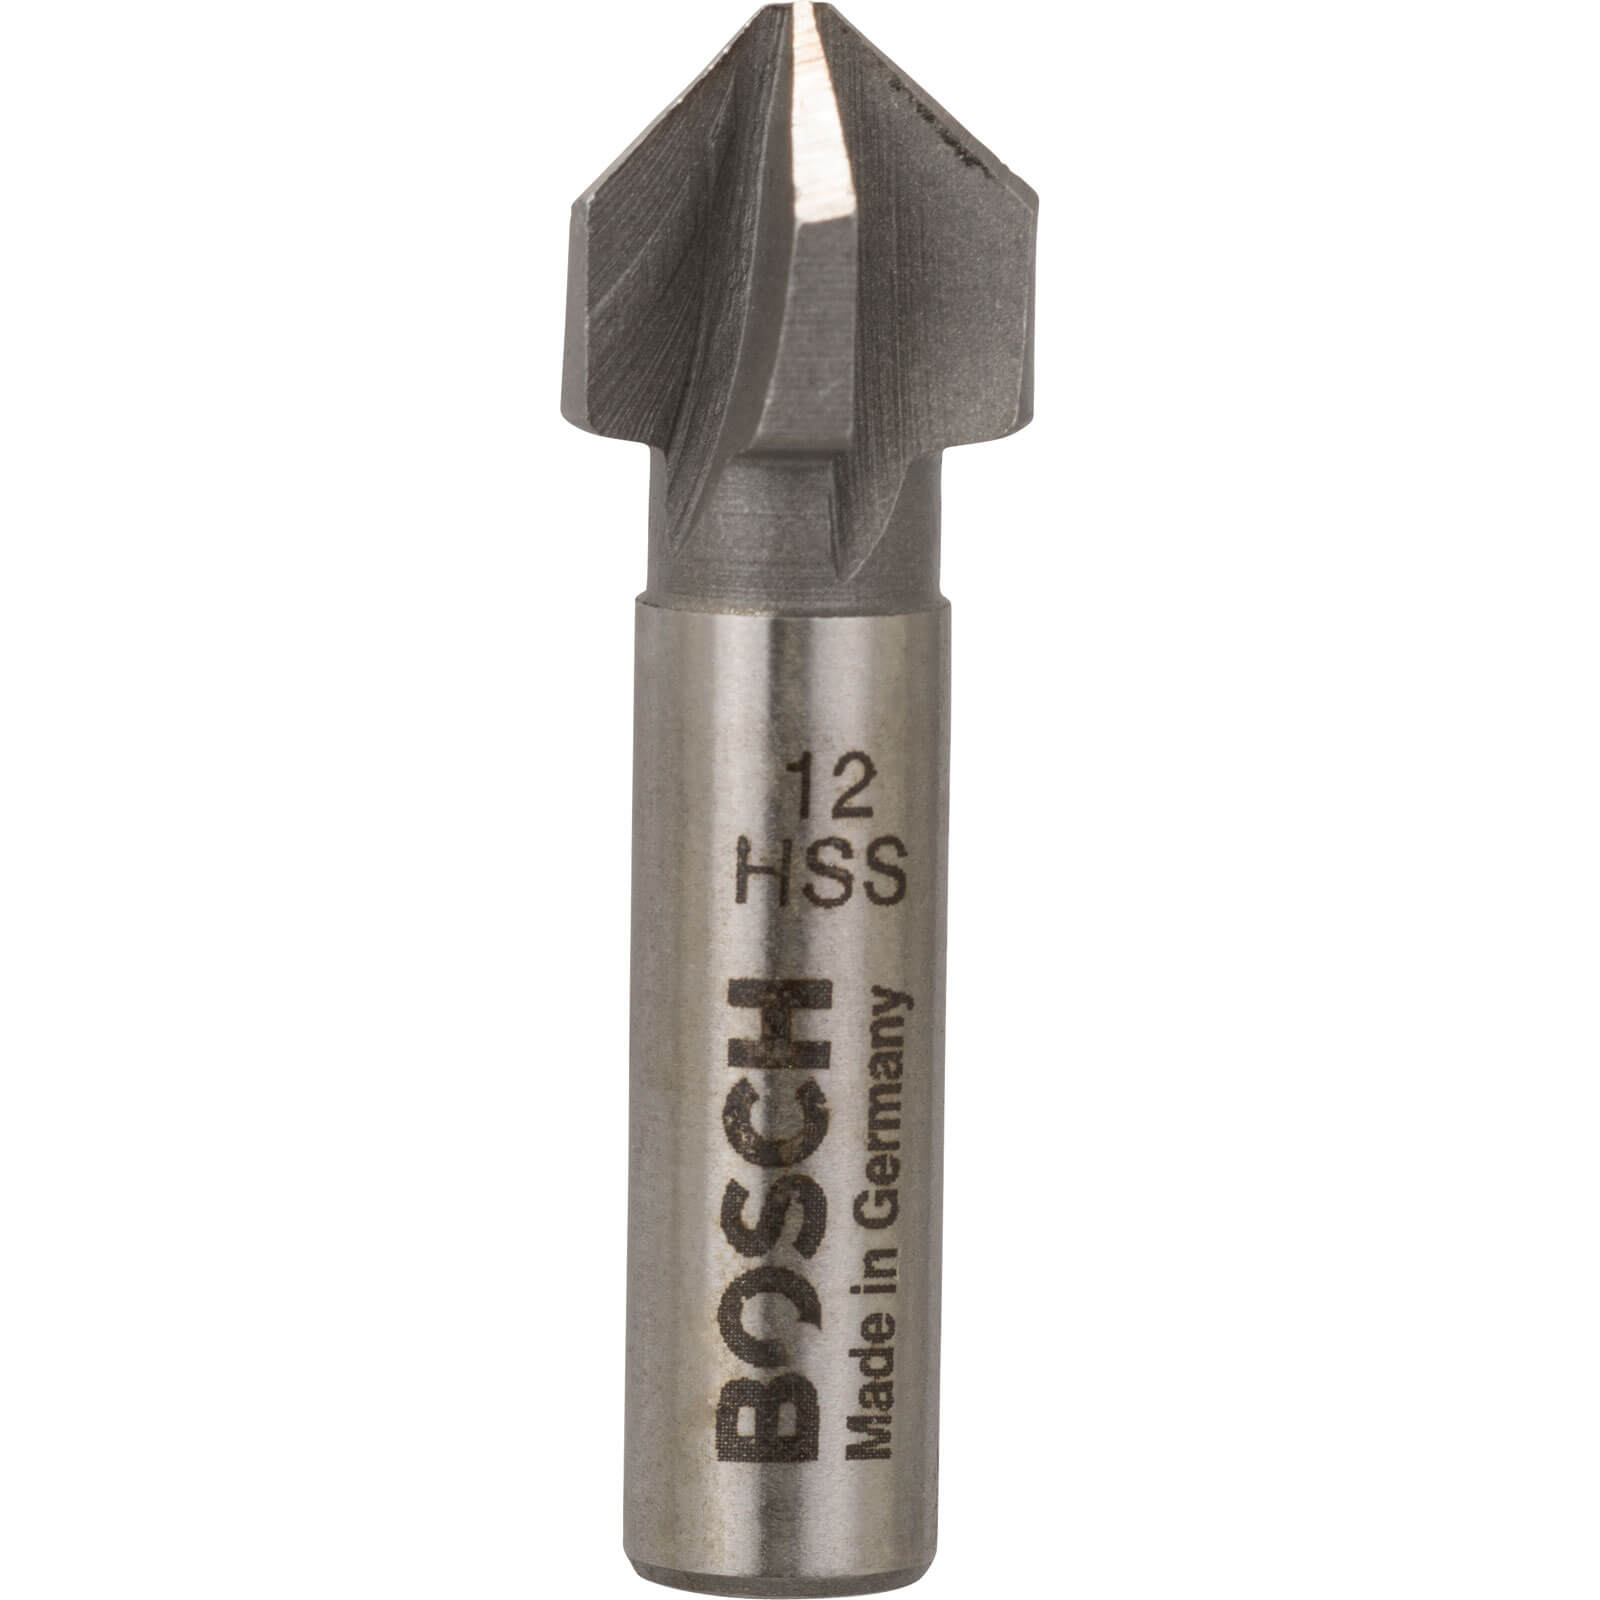 Image of Bosch HSS Countersink Bit 12mm